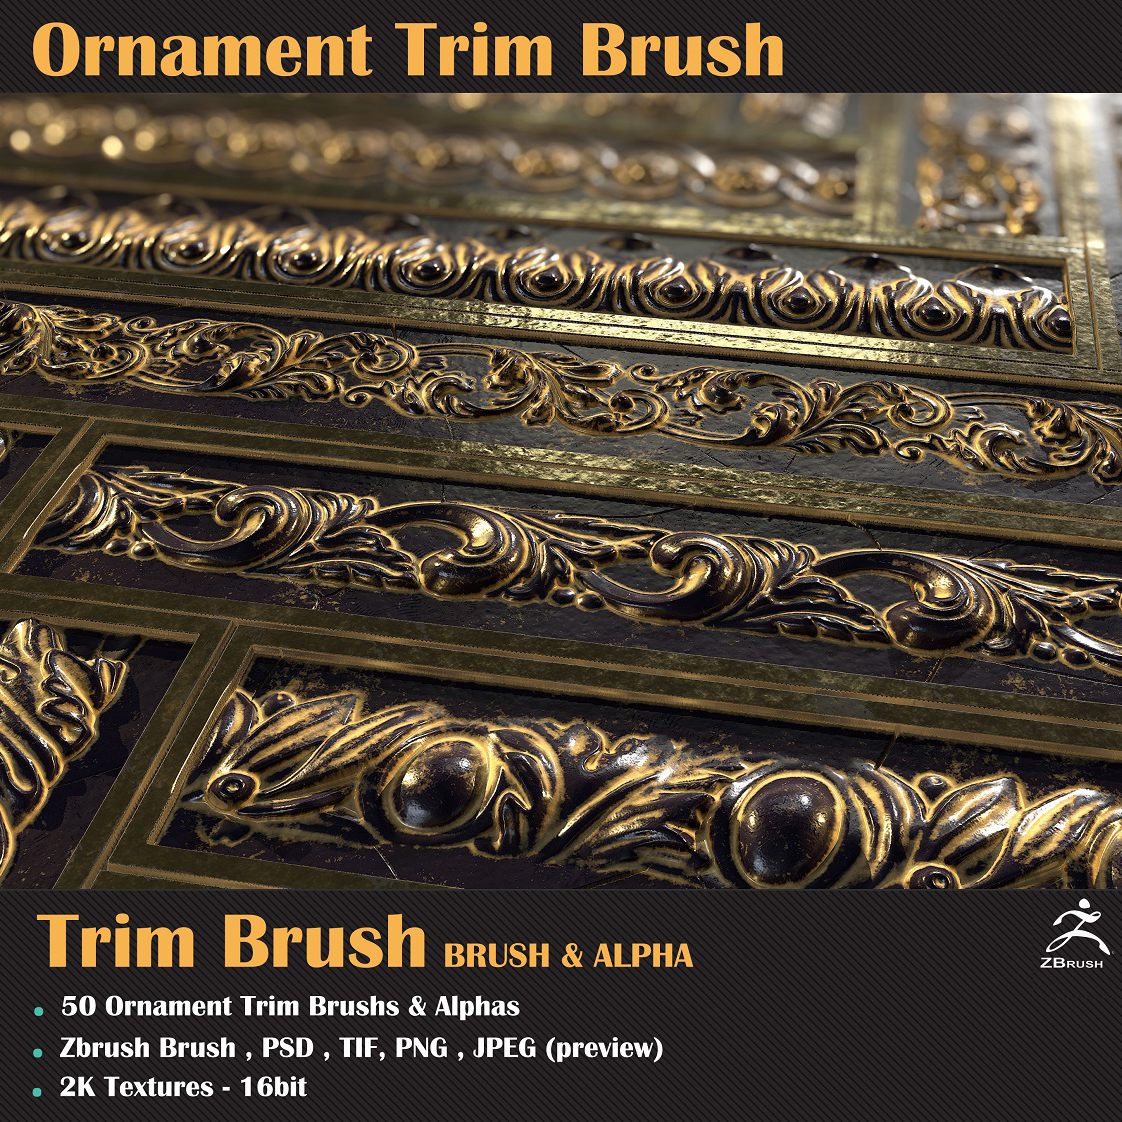 Poster01-Ornament Trim Brush.jpg